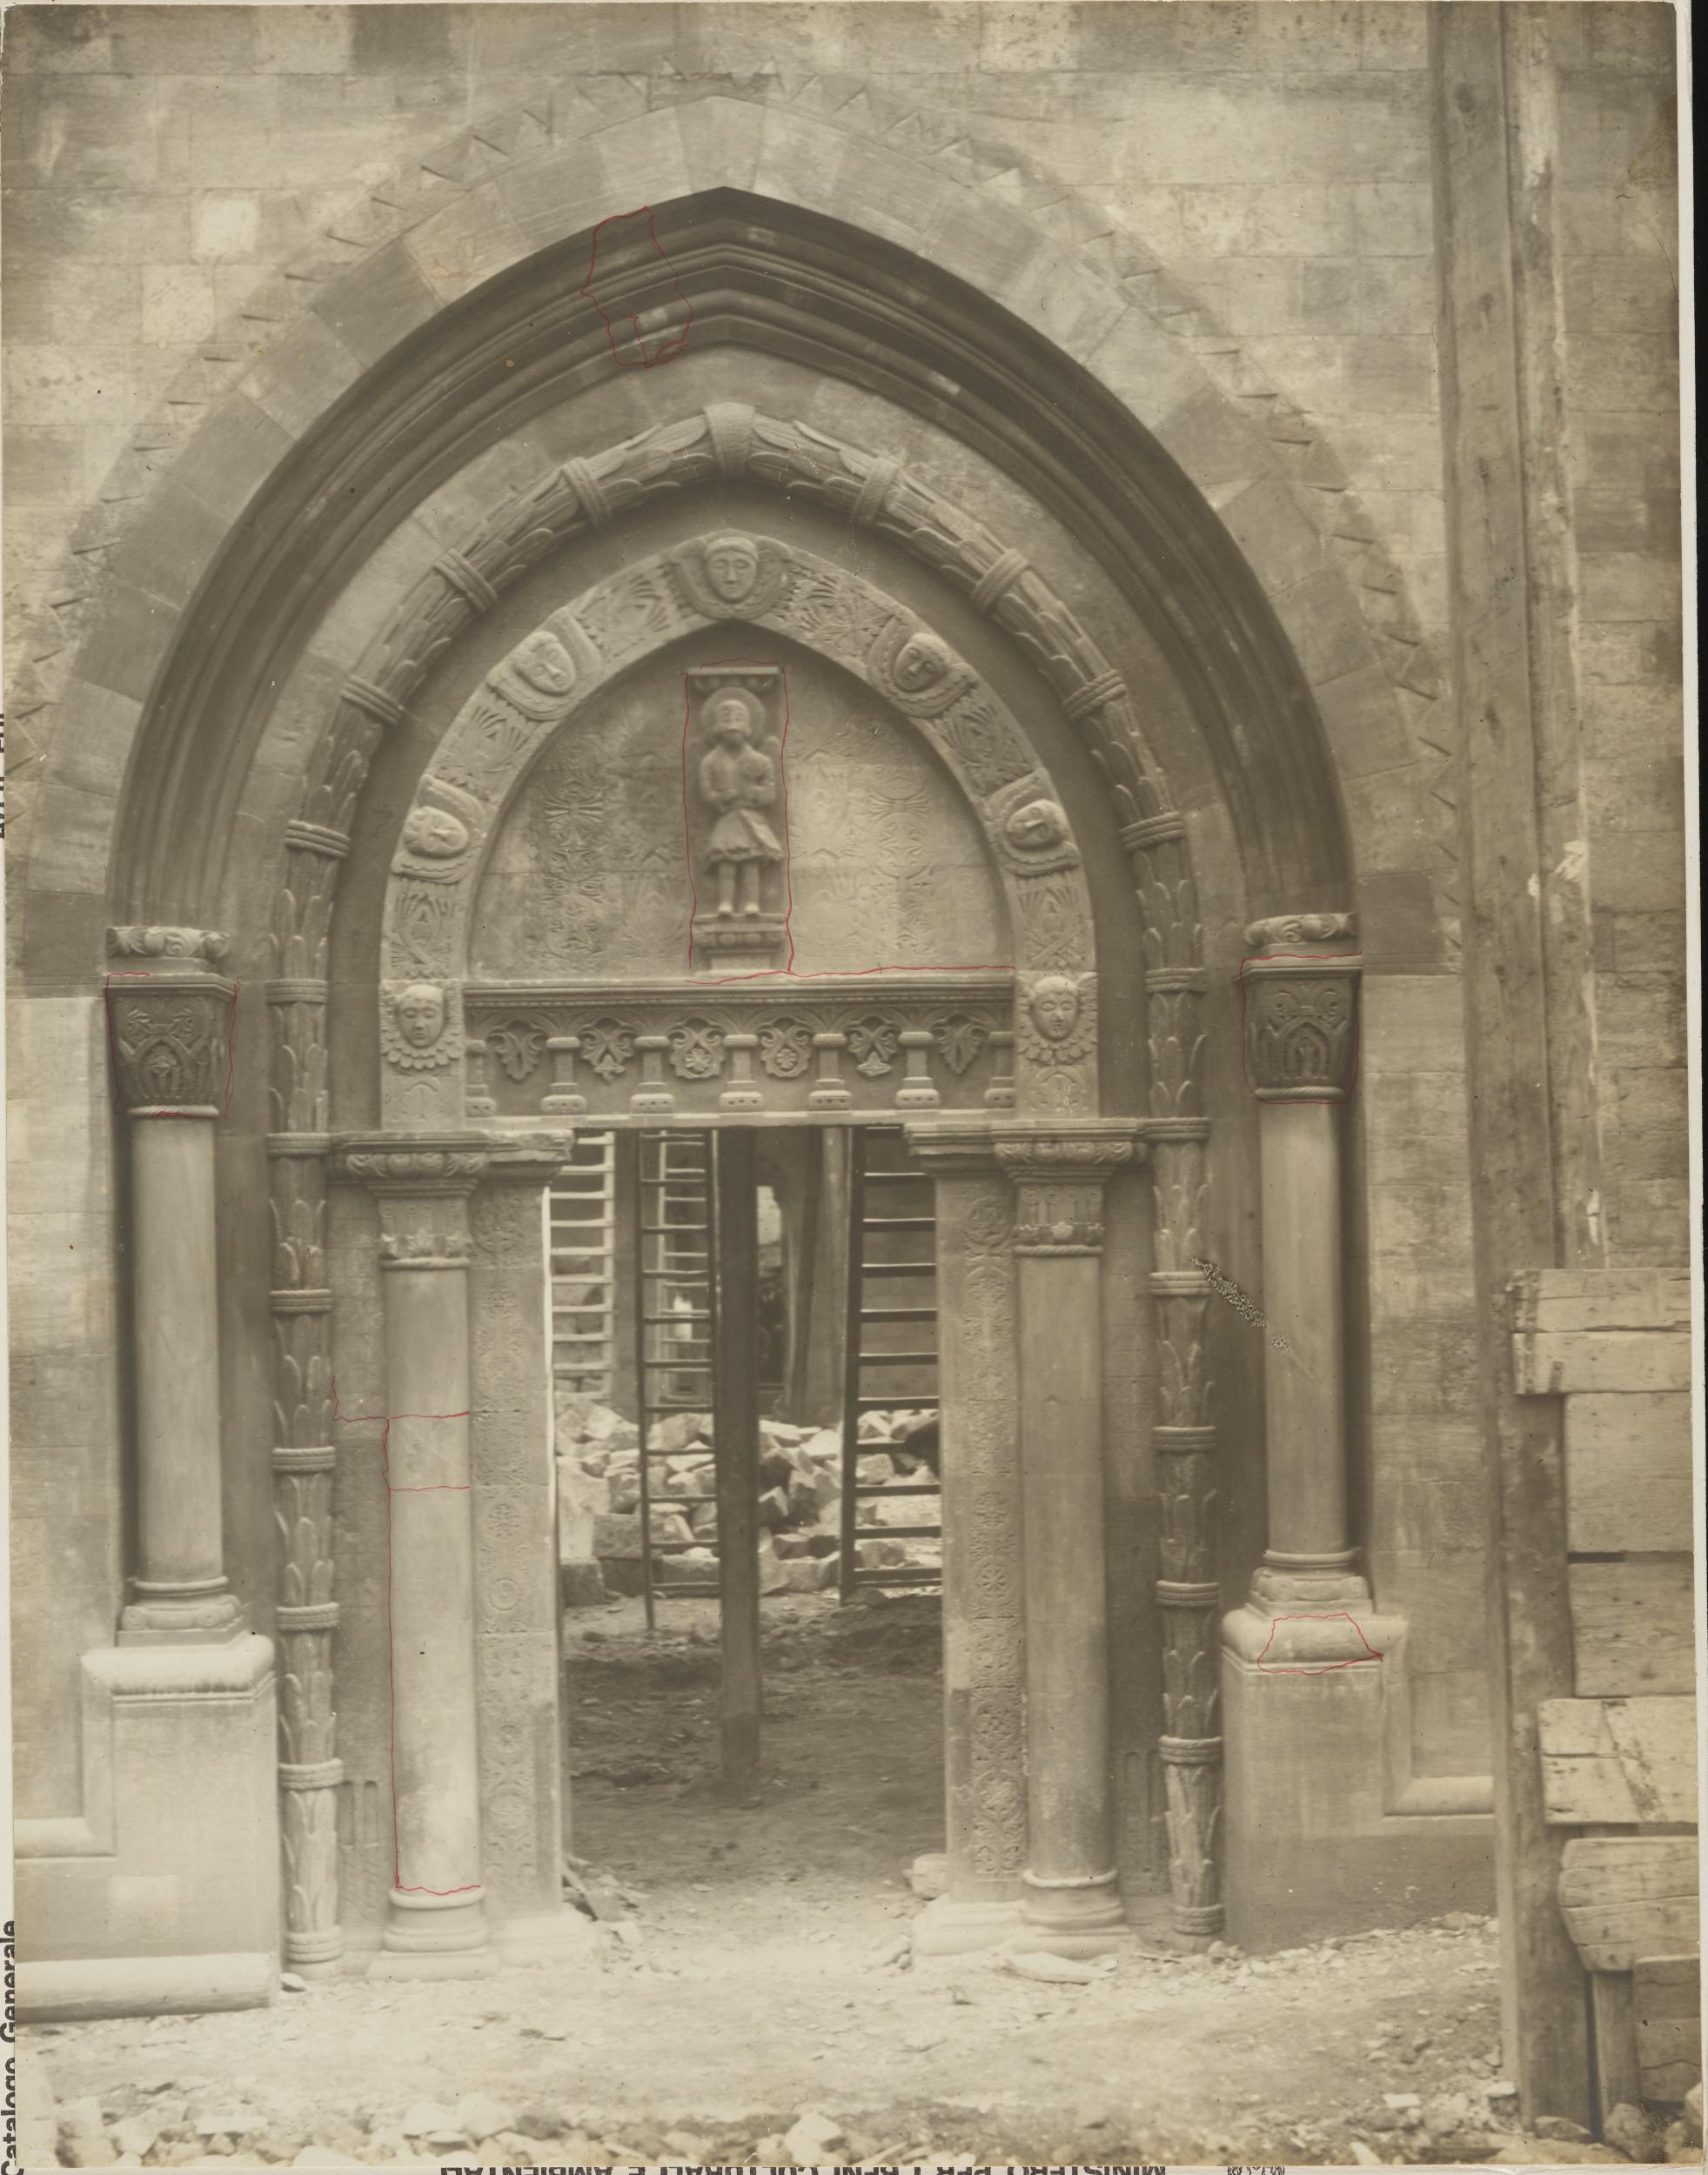 Fotografo non identificato, Conversano - Cattedrale, portale laterale, 1901-1925, gelatina ai sali d'argento/carta, MPI155329